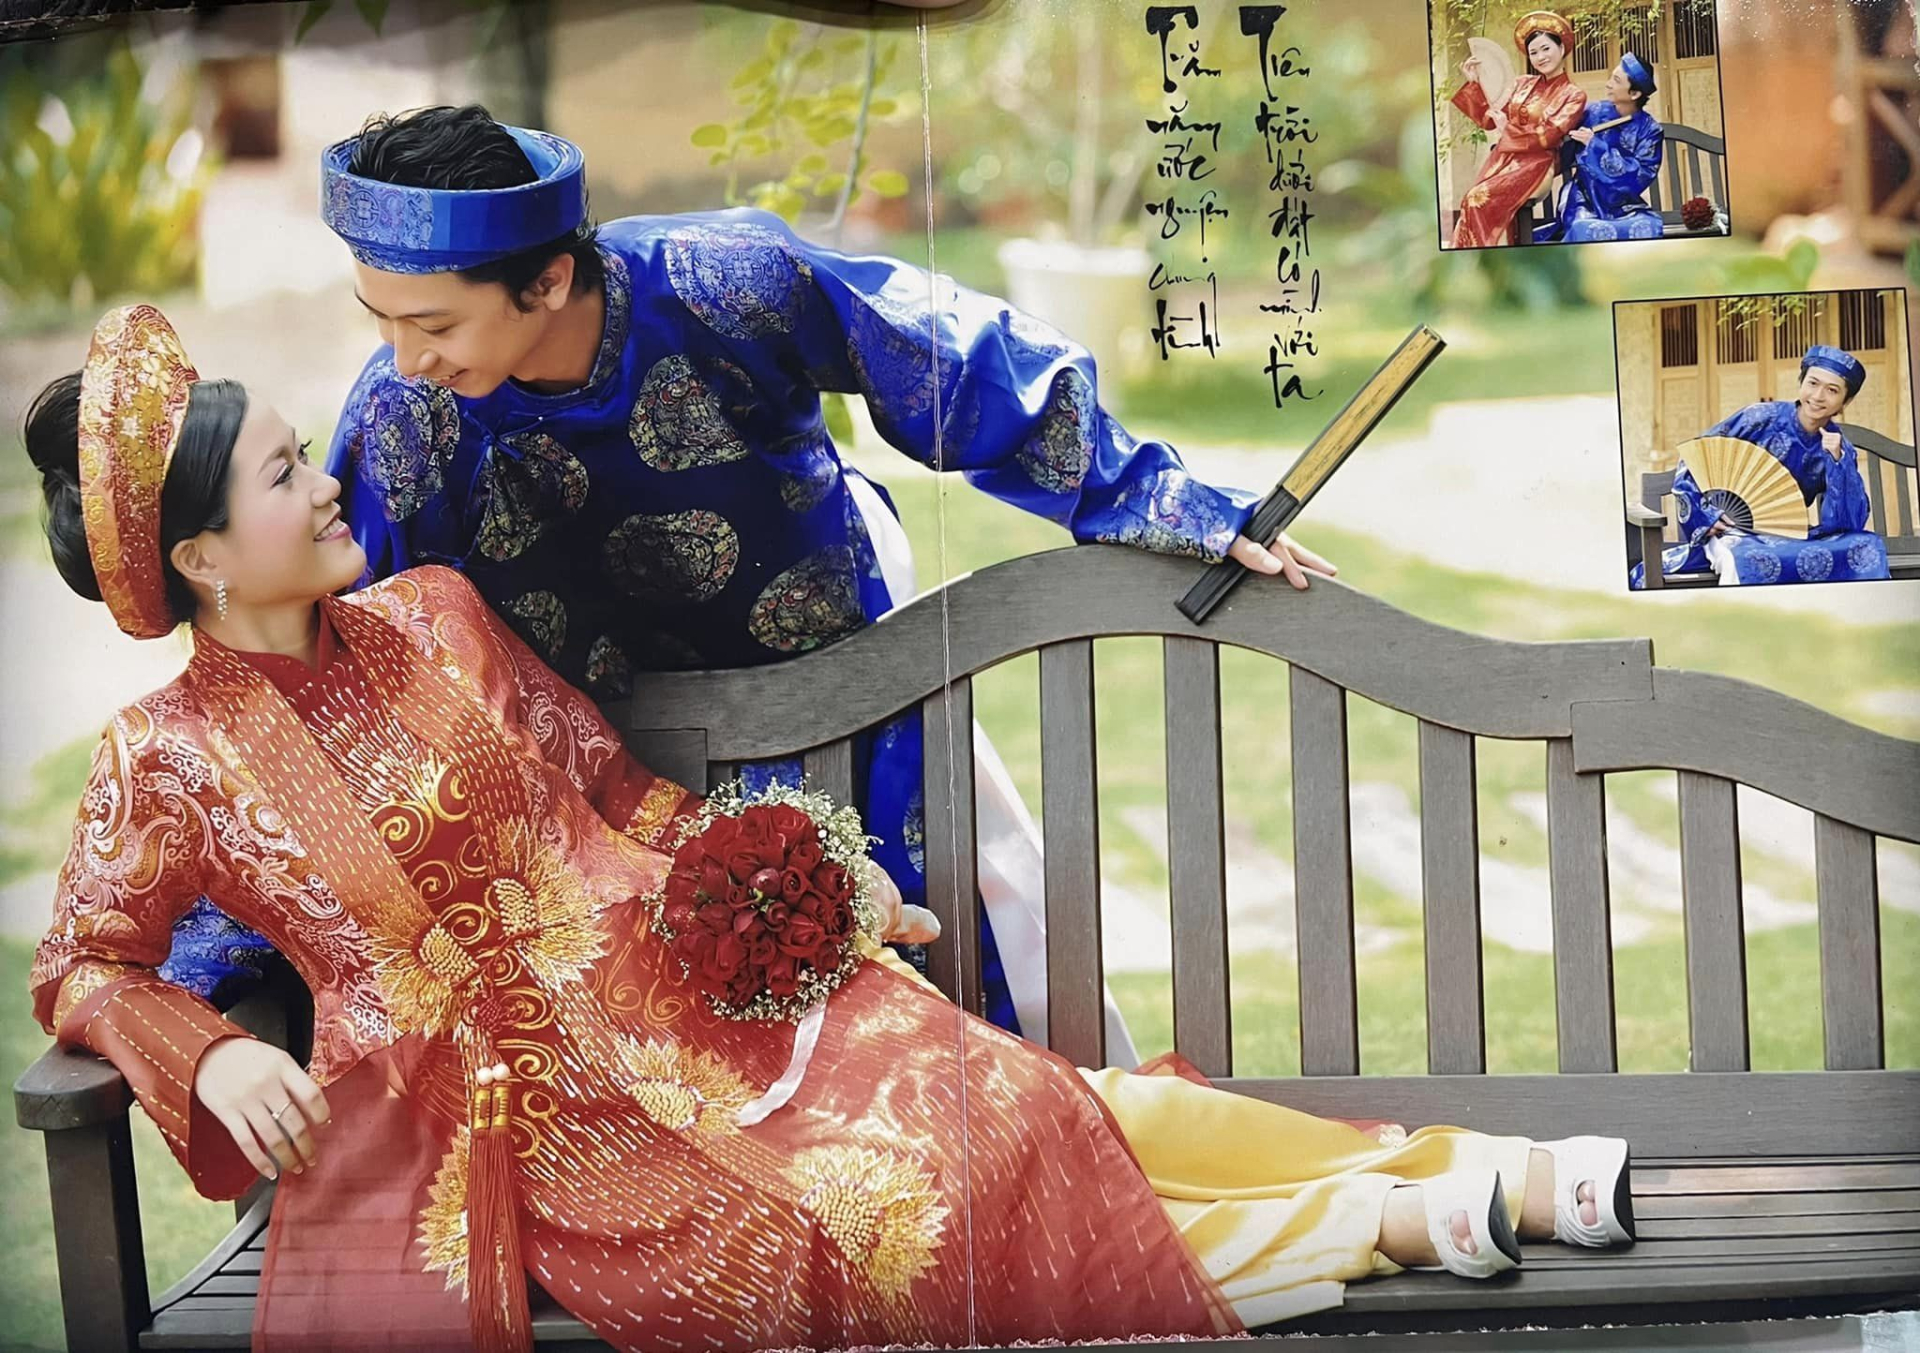 Hứa Minh Đạt tung ảnh cưới với Lâm Vỹ Dạ nhân ngày lễ Tình yêu, CĐM cười ngất với những concept khó đỡ - ảnh 3